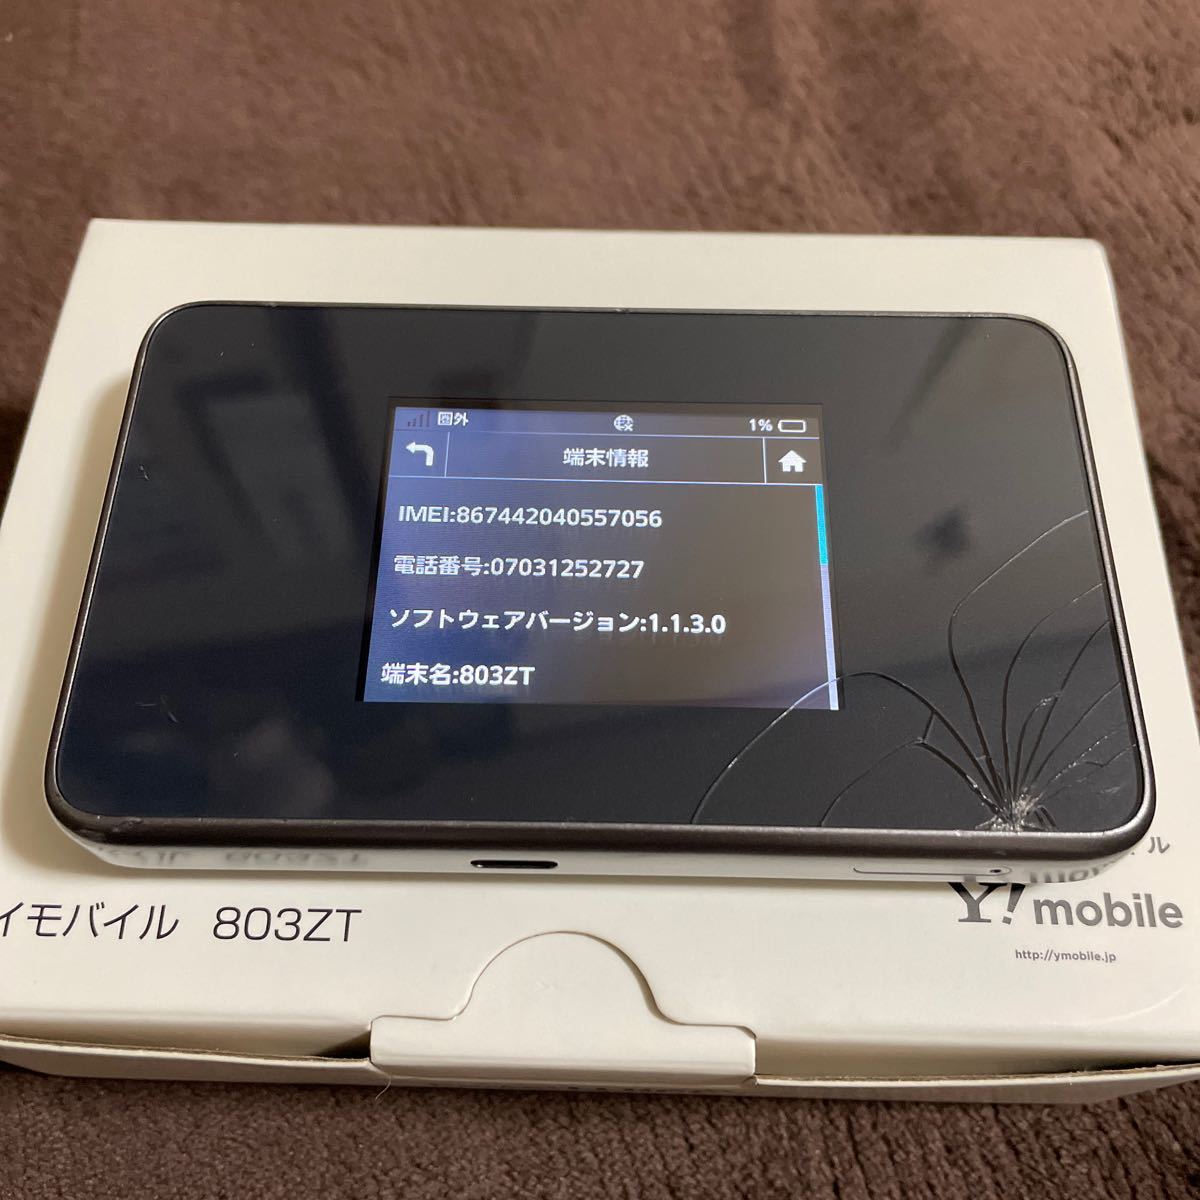 ポケット Wi-Fi Pocket WiFi Ymobile 803ZT